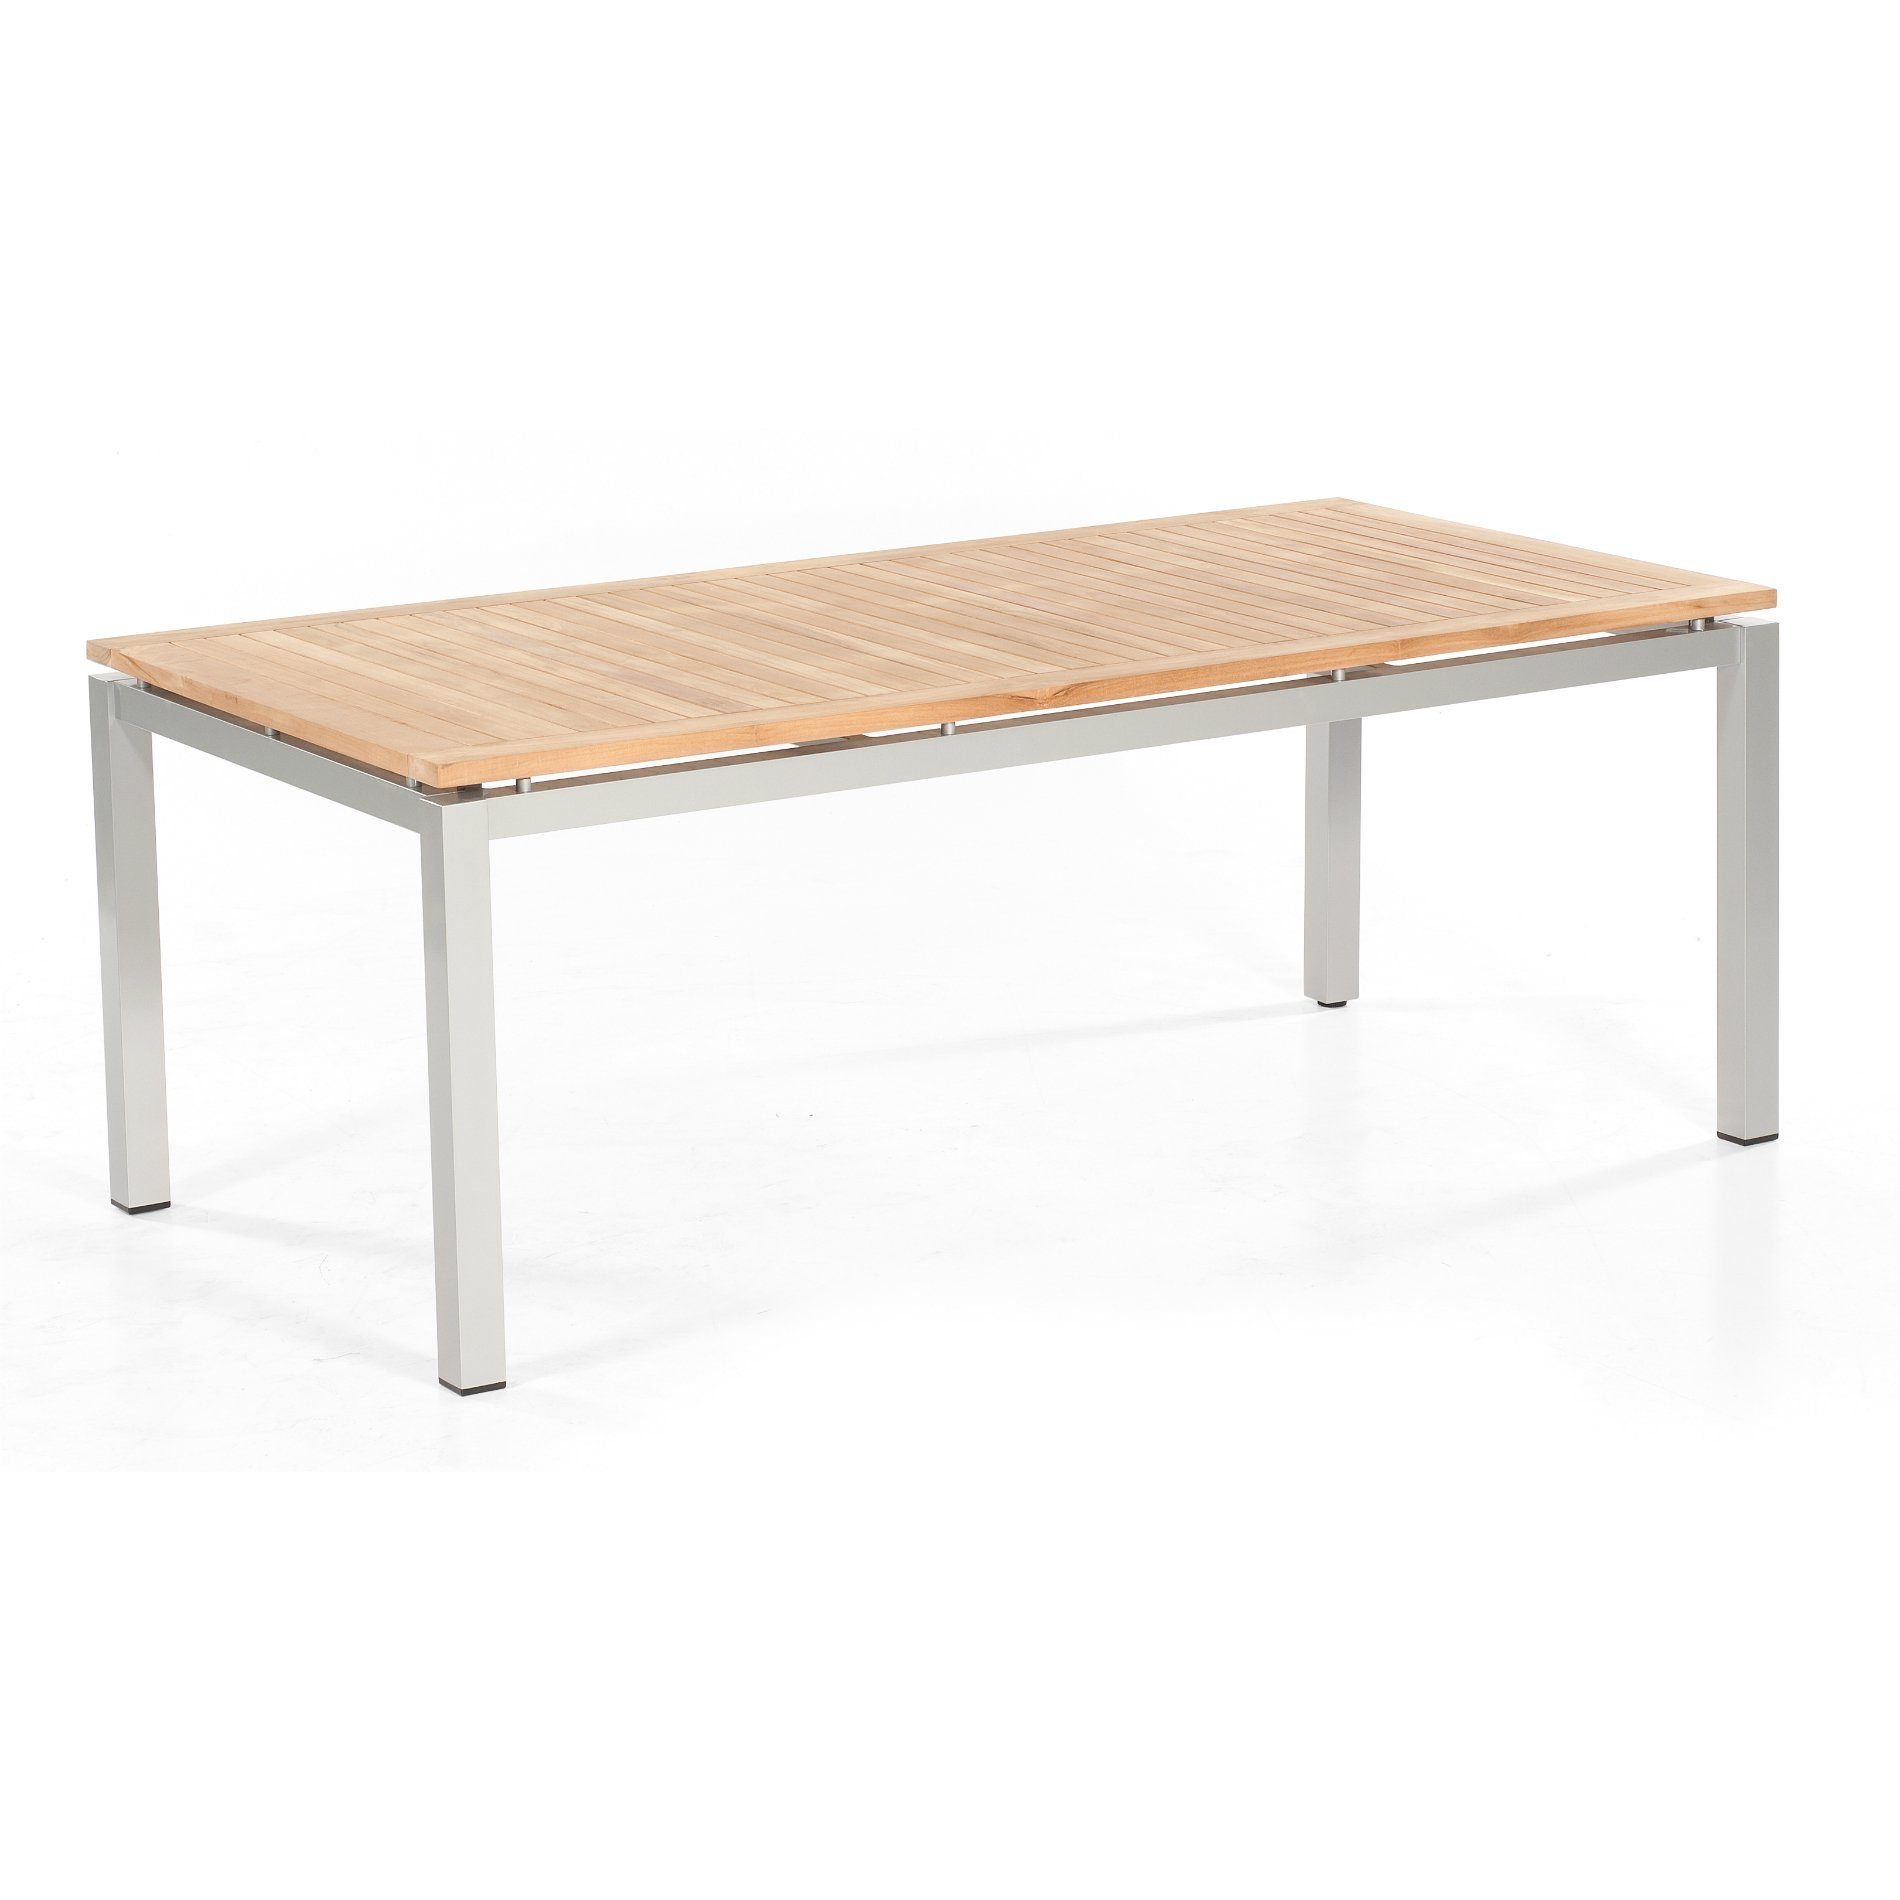 SonnenPartner Tisch 200x100 cm "Base", Gestell Aluminium silber, Tischplatte Pure natur teak